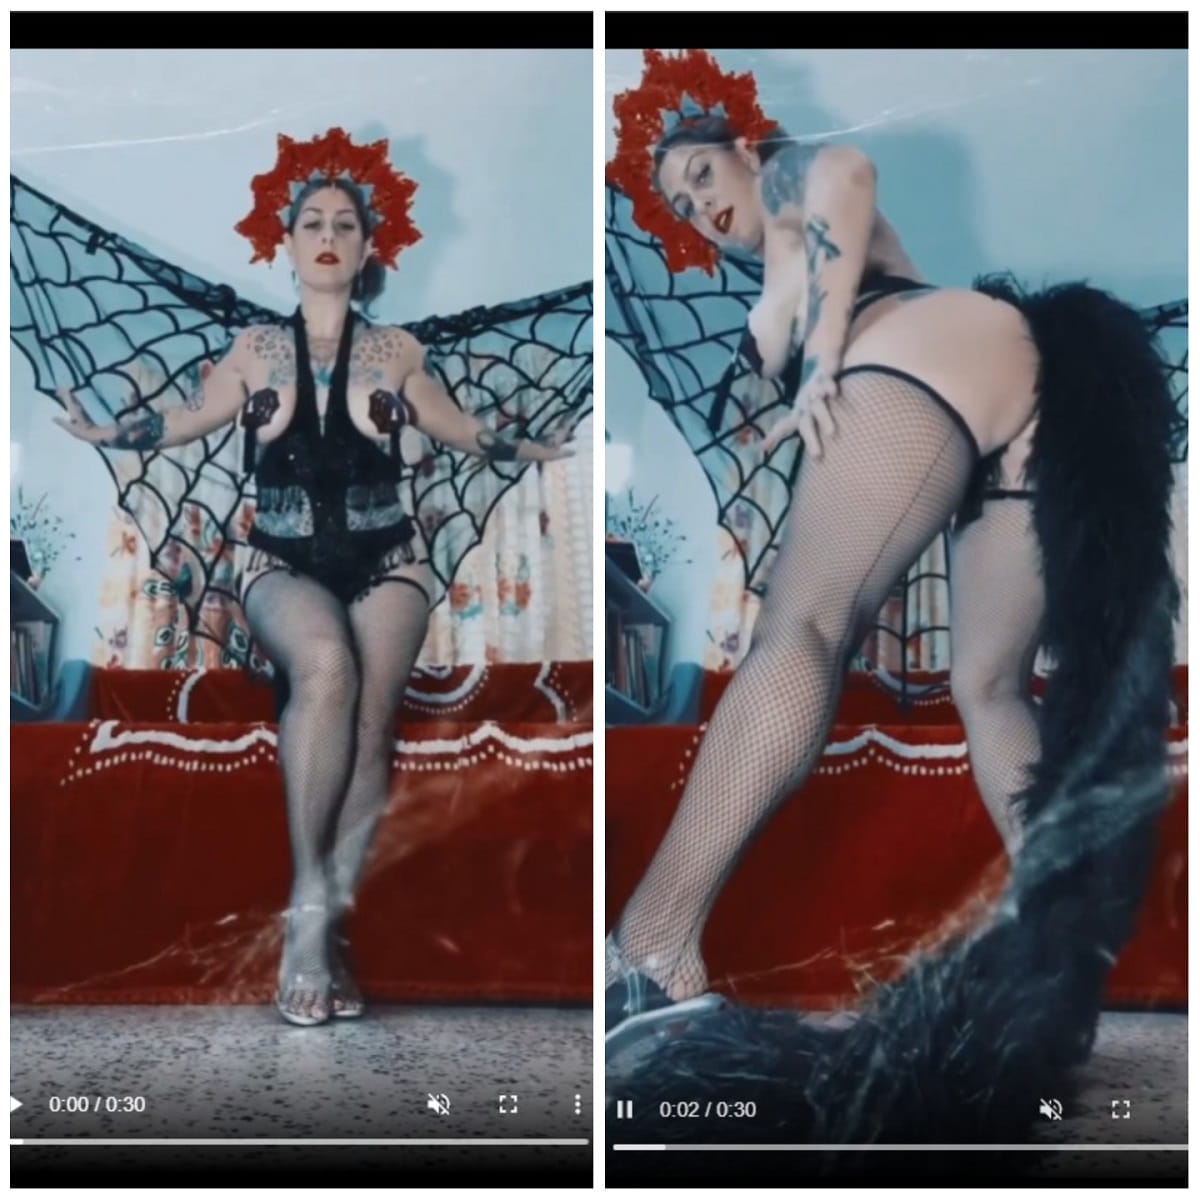 Danielle Colby in burlesque-inspired lingerie.